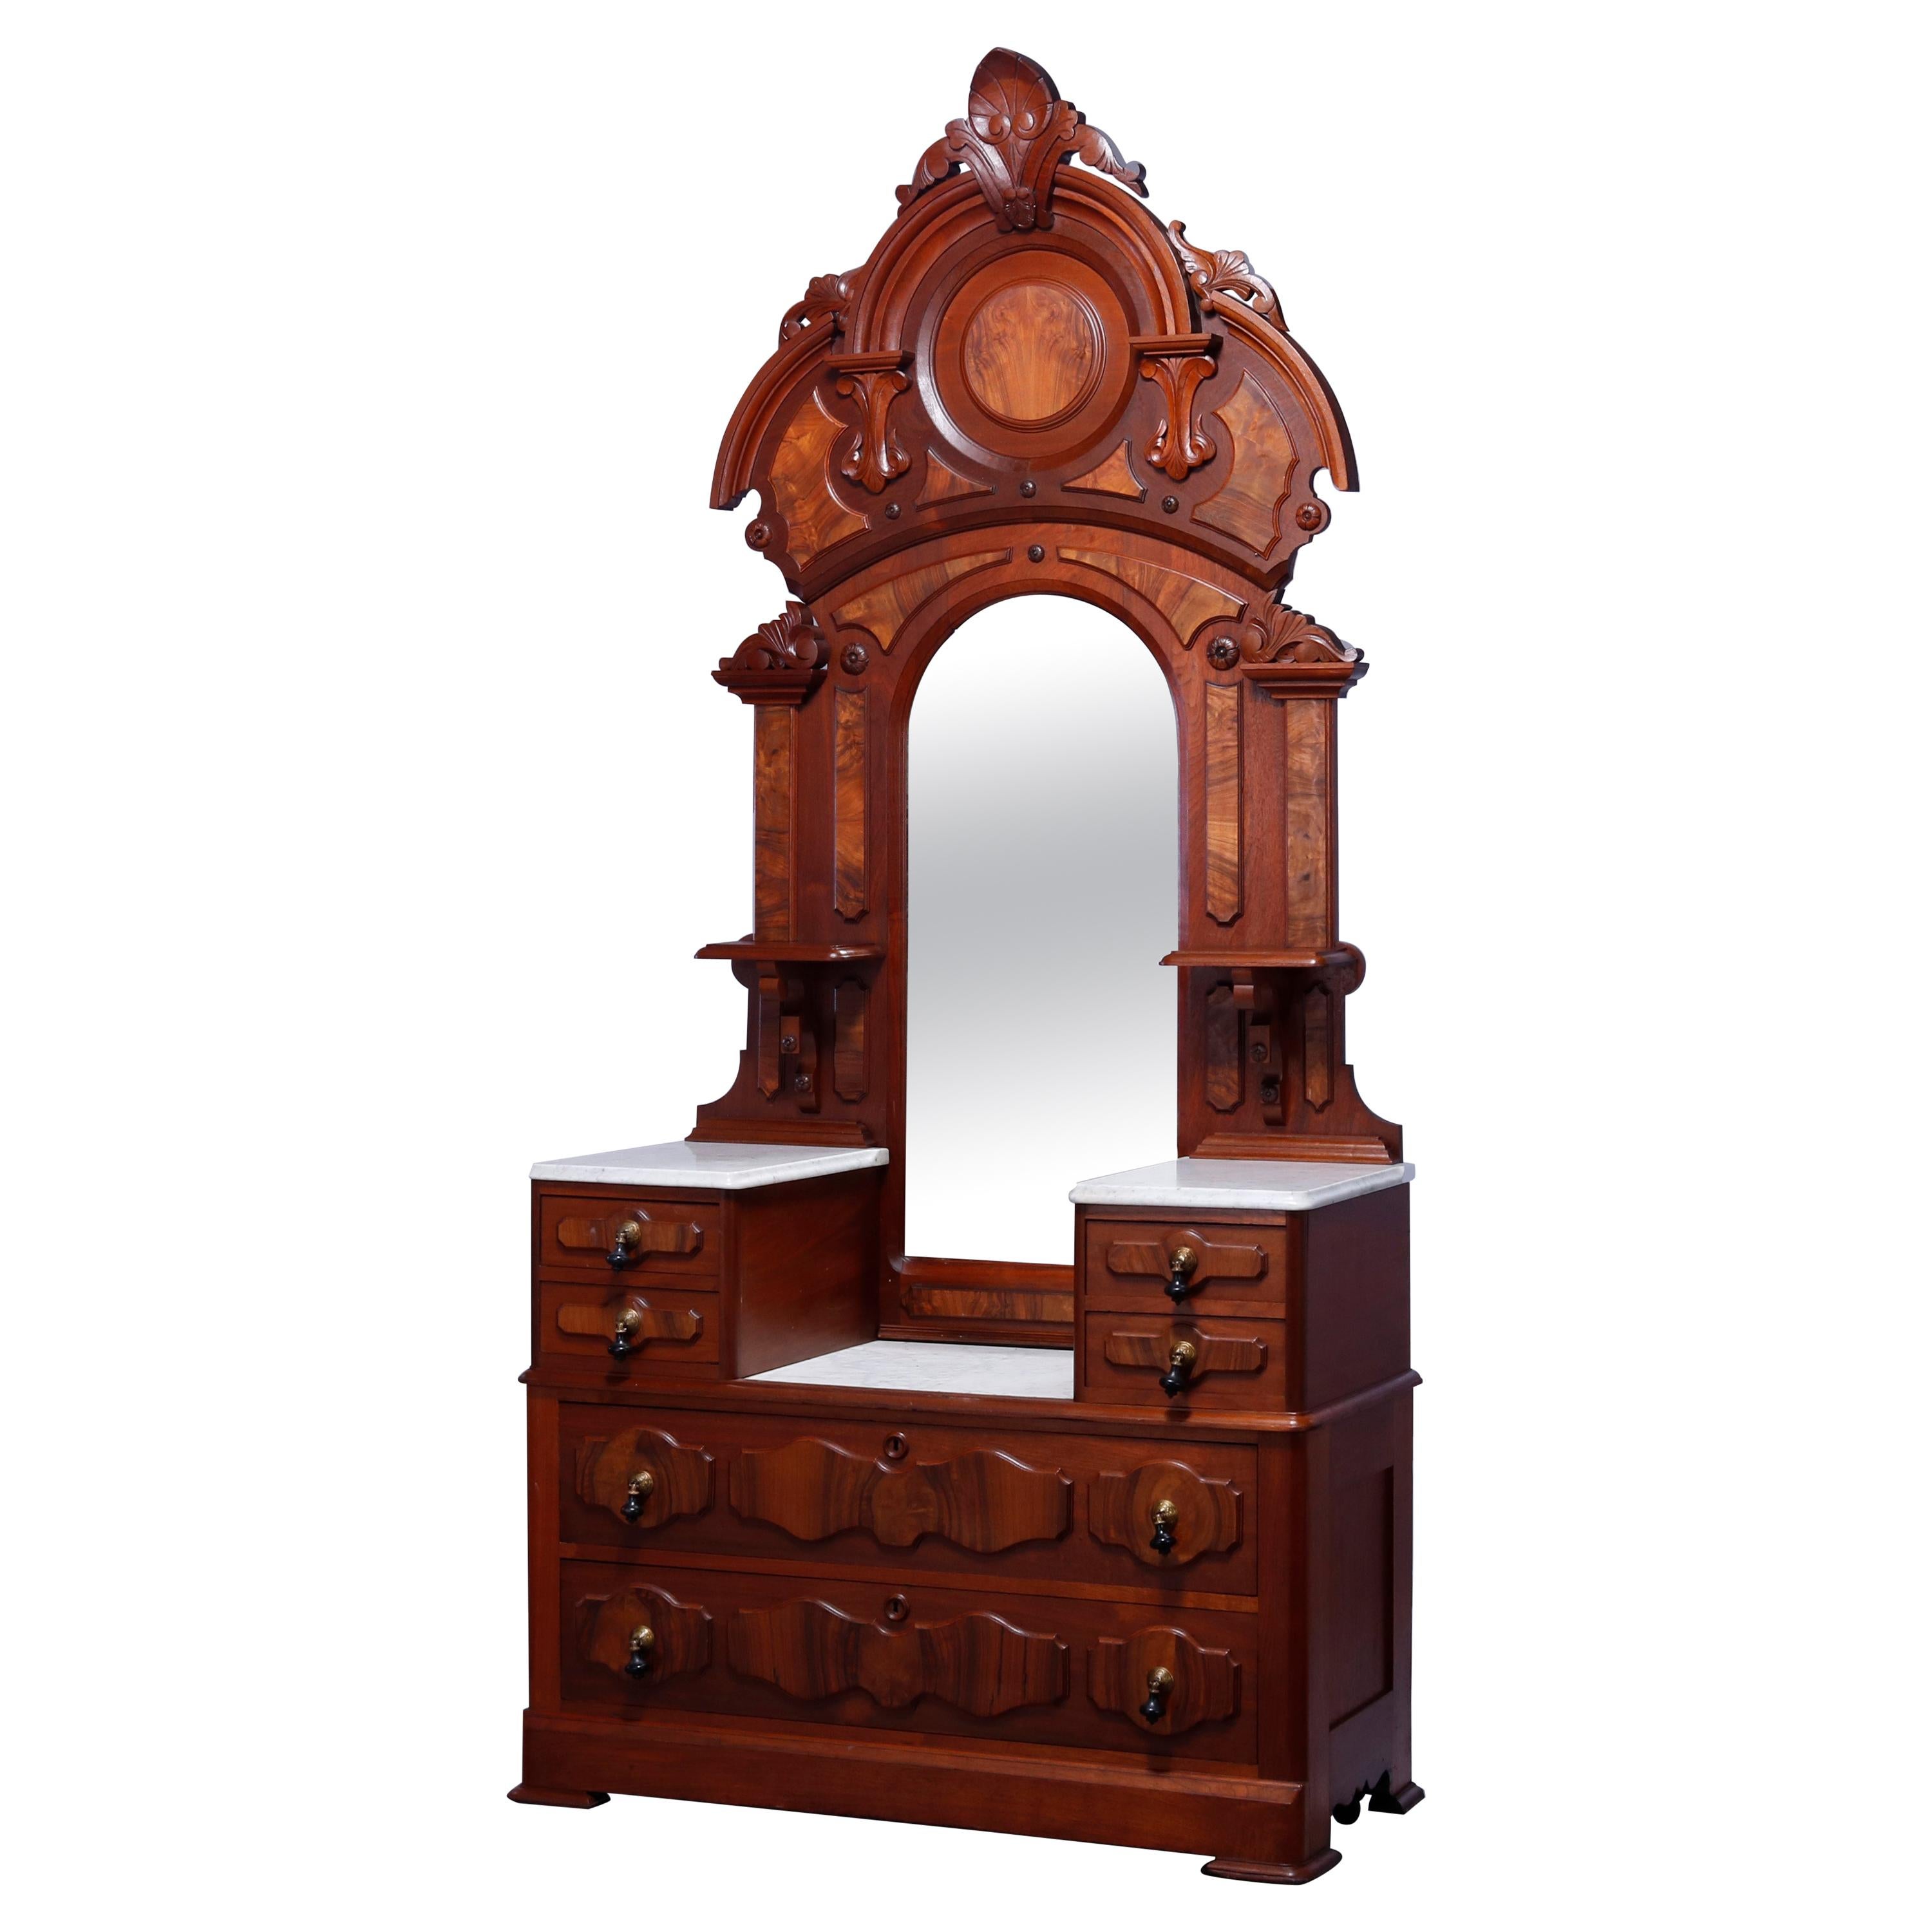 Antique Renaissance Revival Walnut & Burl Marble Top Drop Center Dresser, c1880